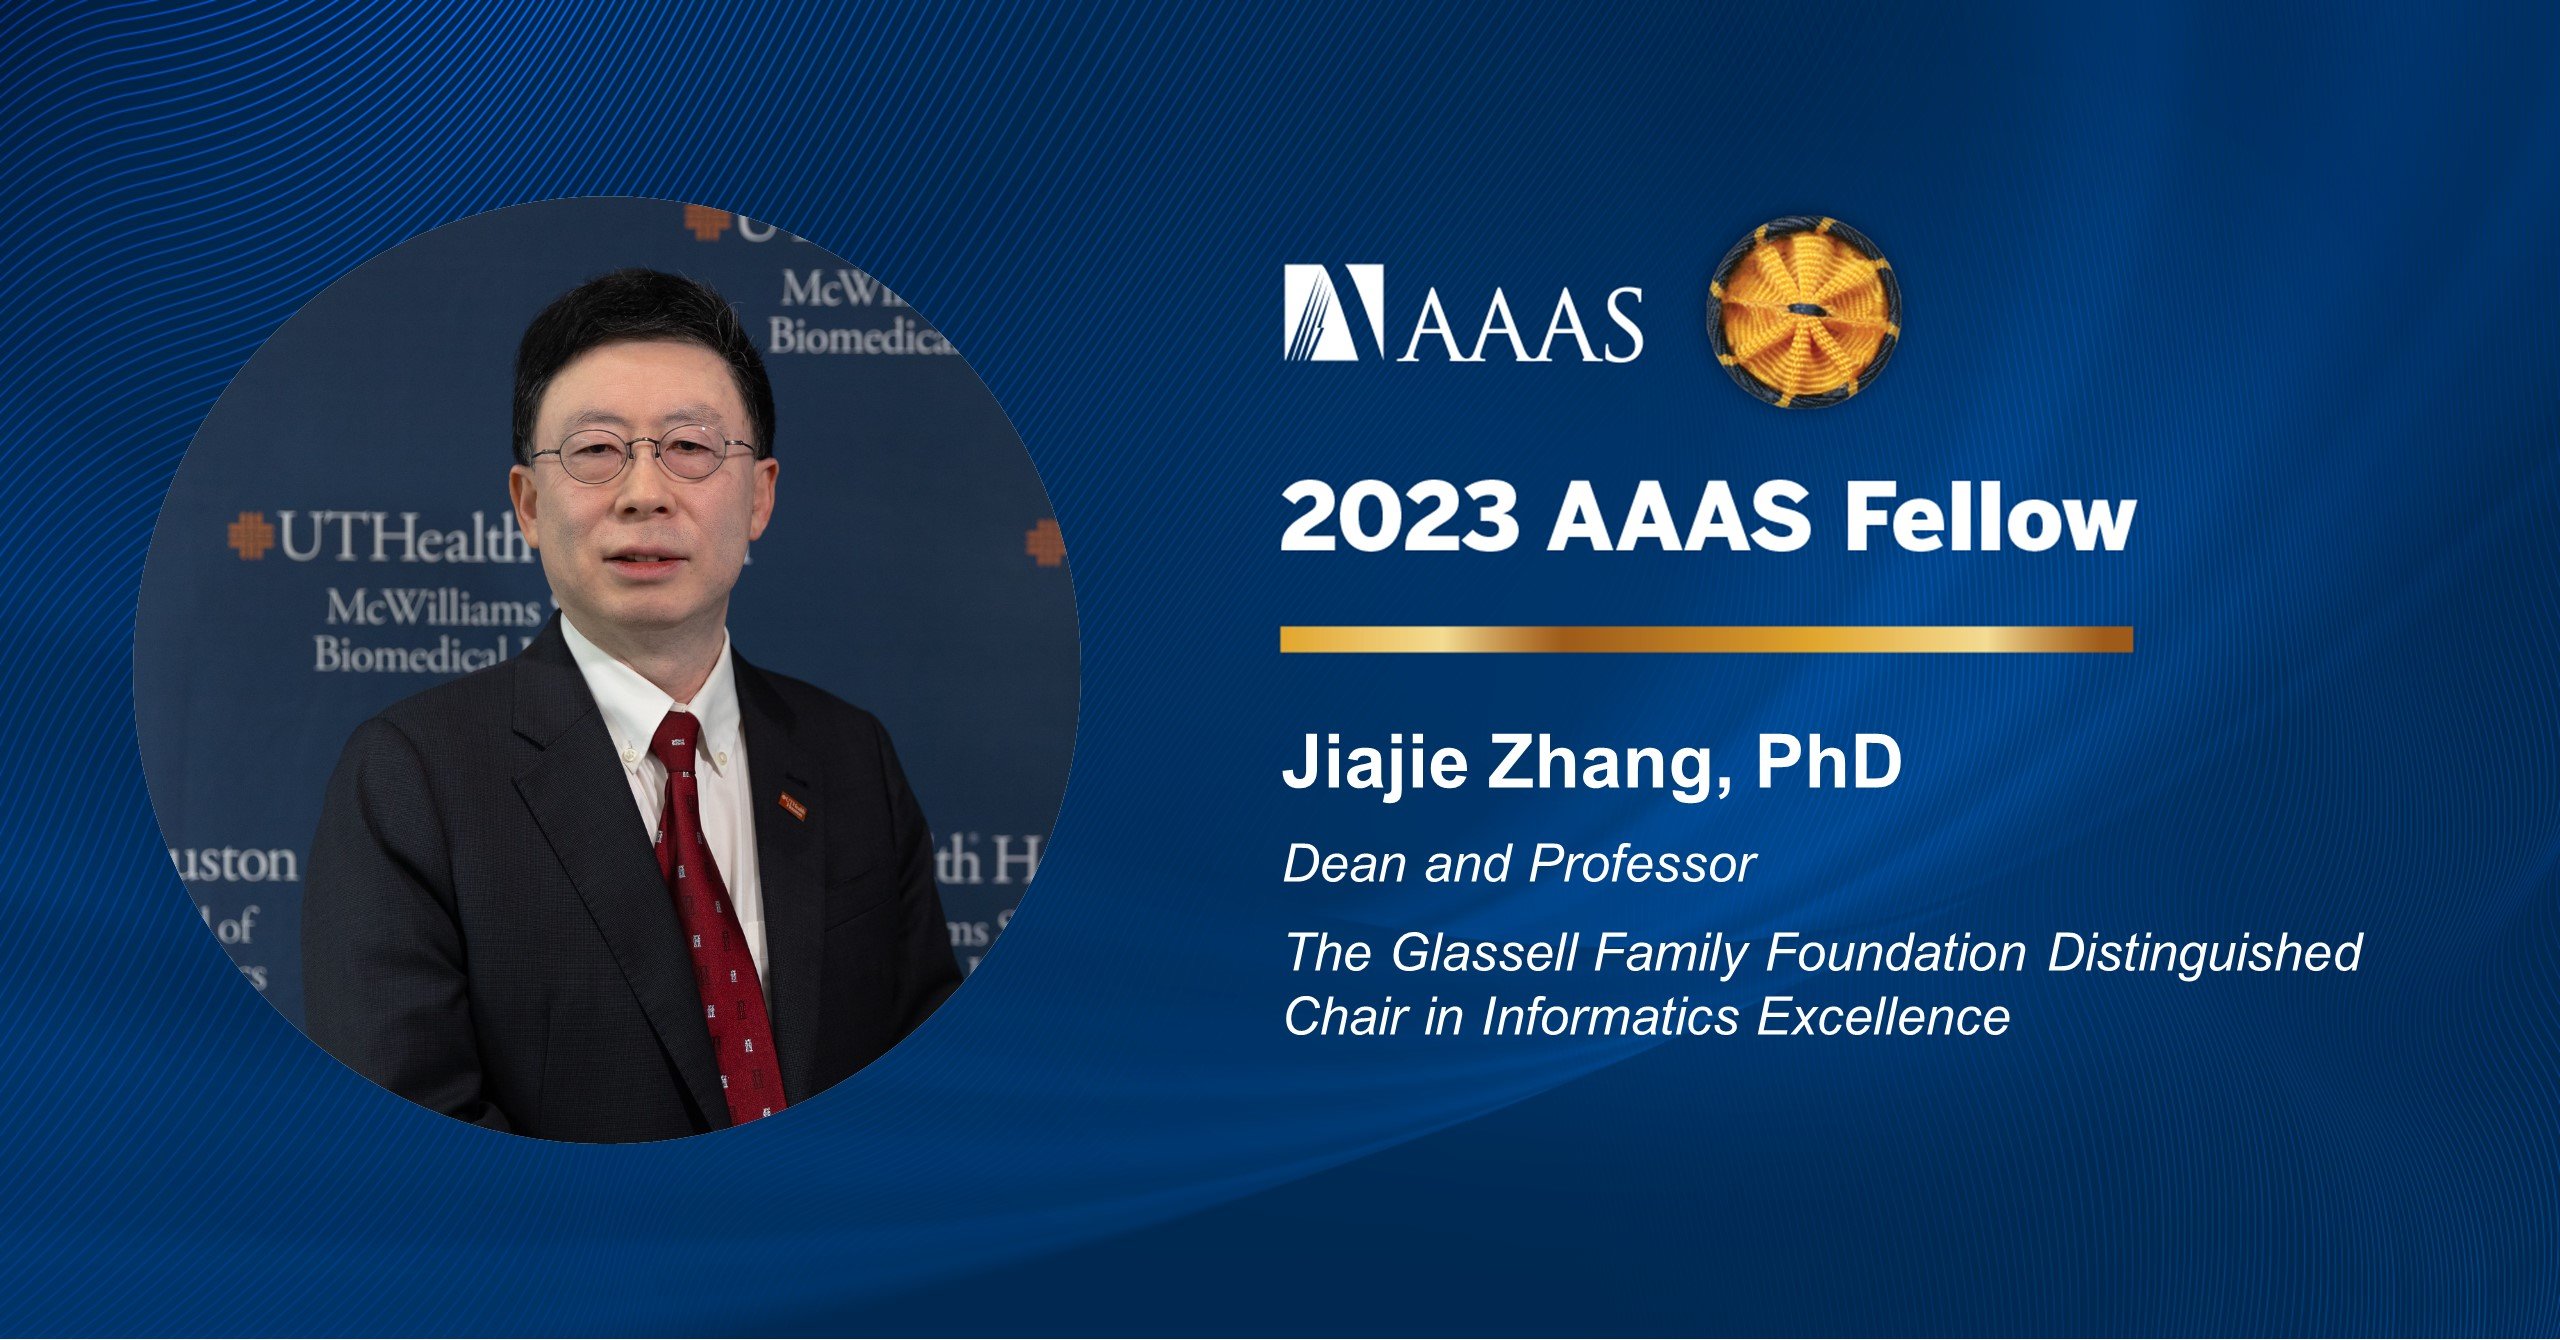 Dean Jiajie Zhang, PhD named 2023 AAAS Fellow